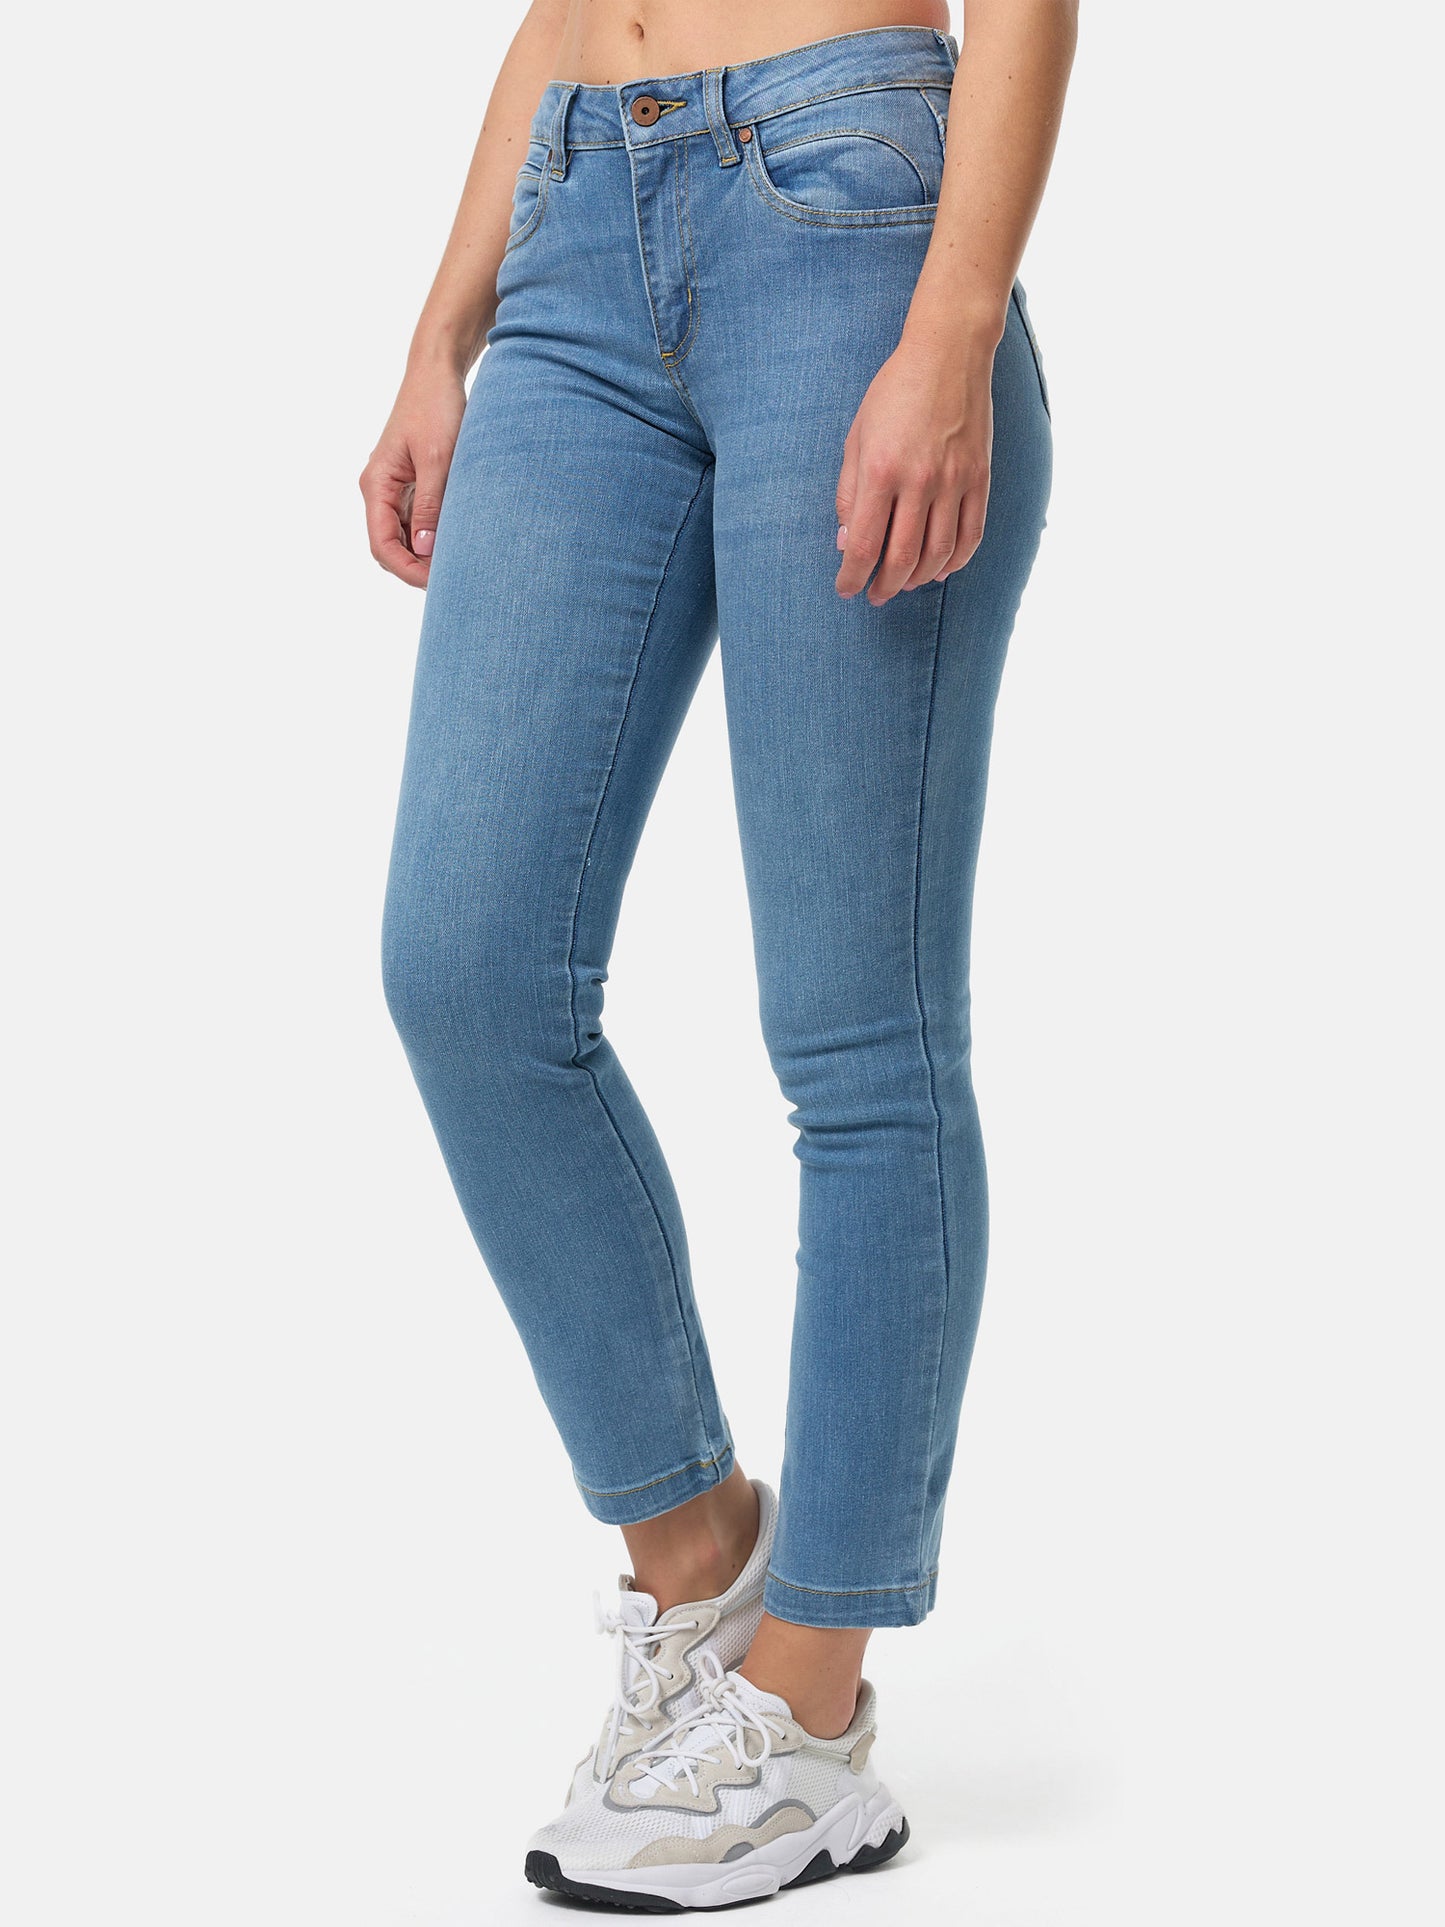 Tazzio Damen Straight Leg Jeans F110